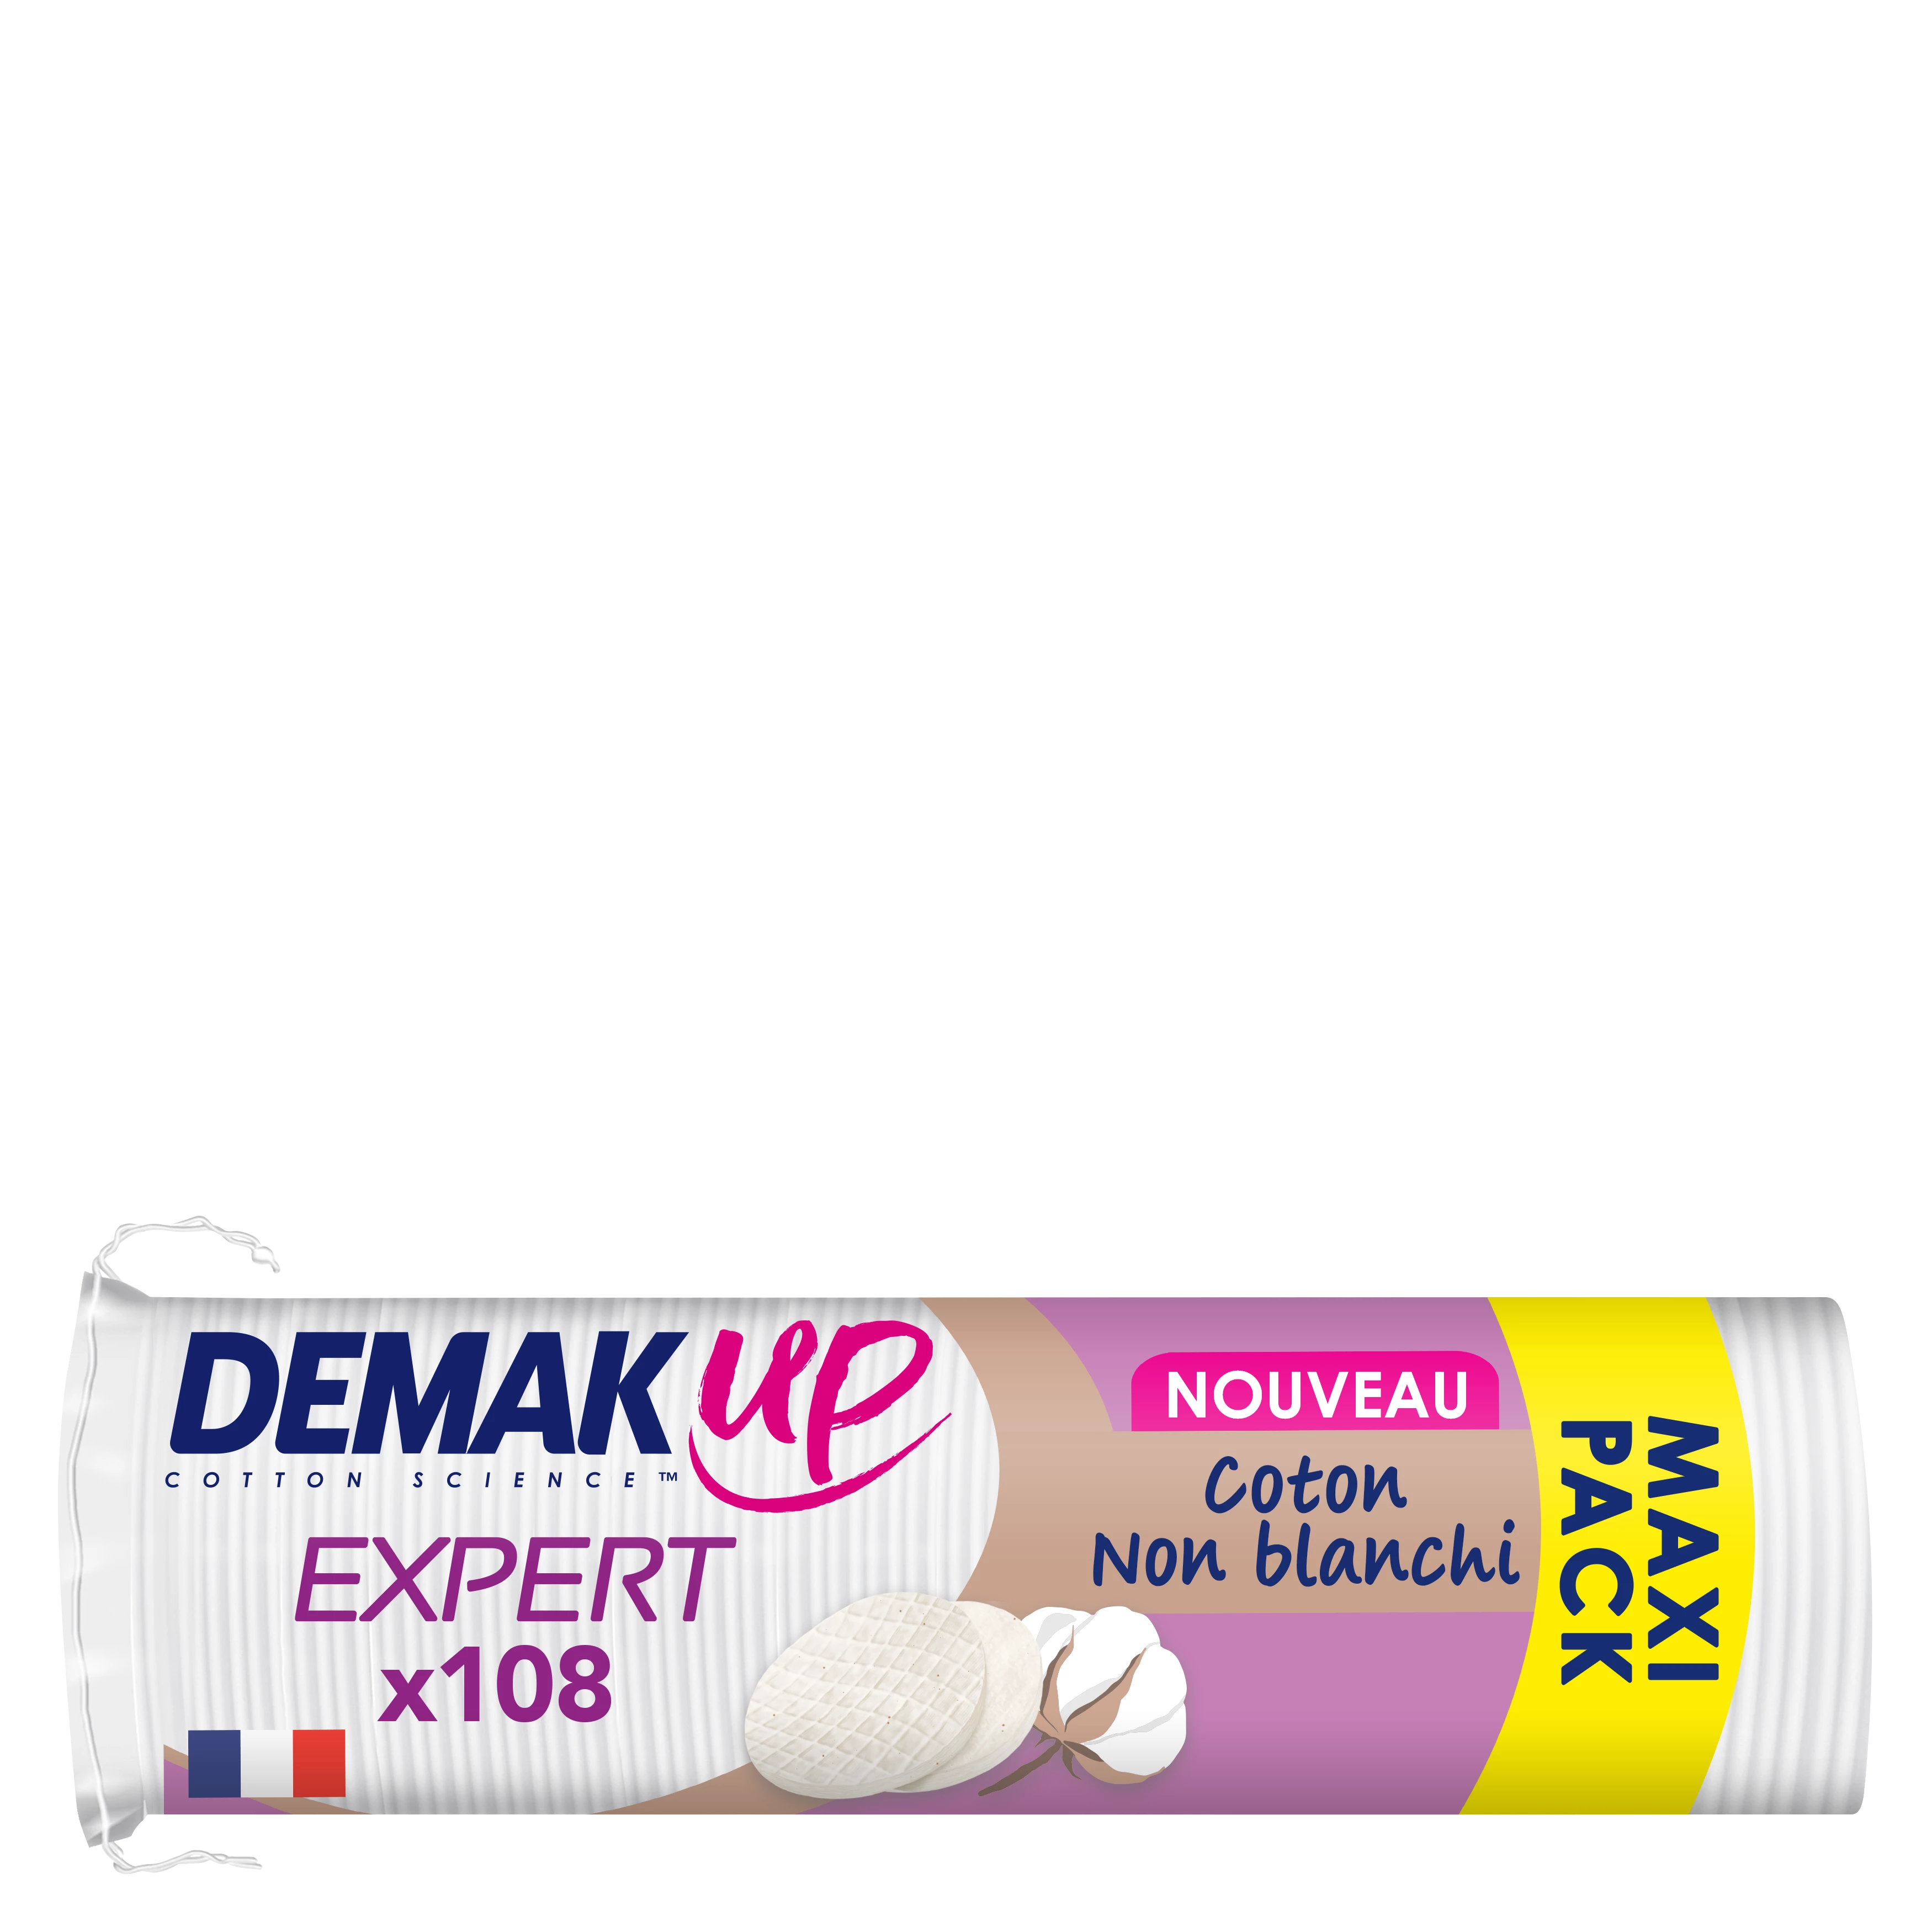 Demakup Disq.demaq.expert X108